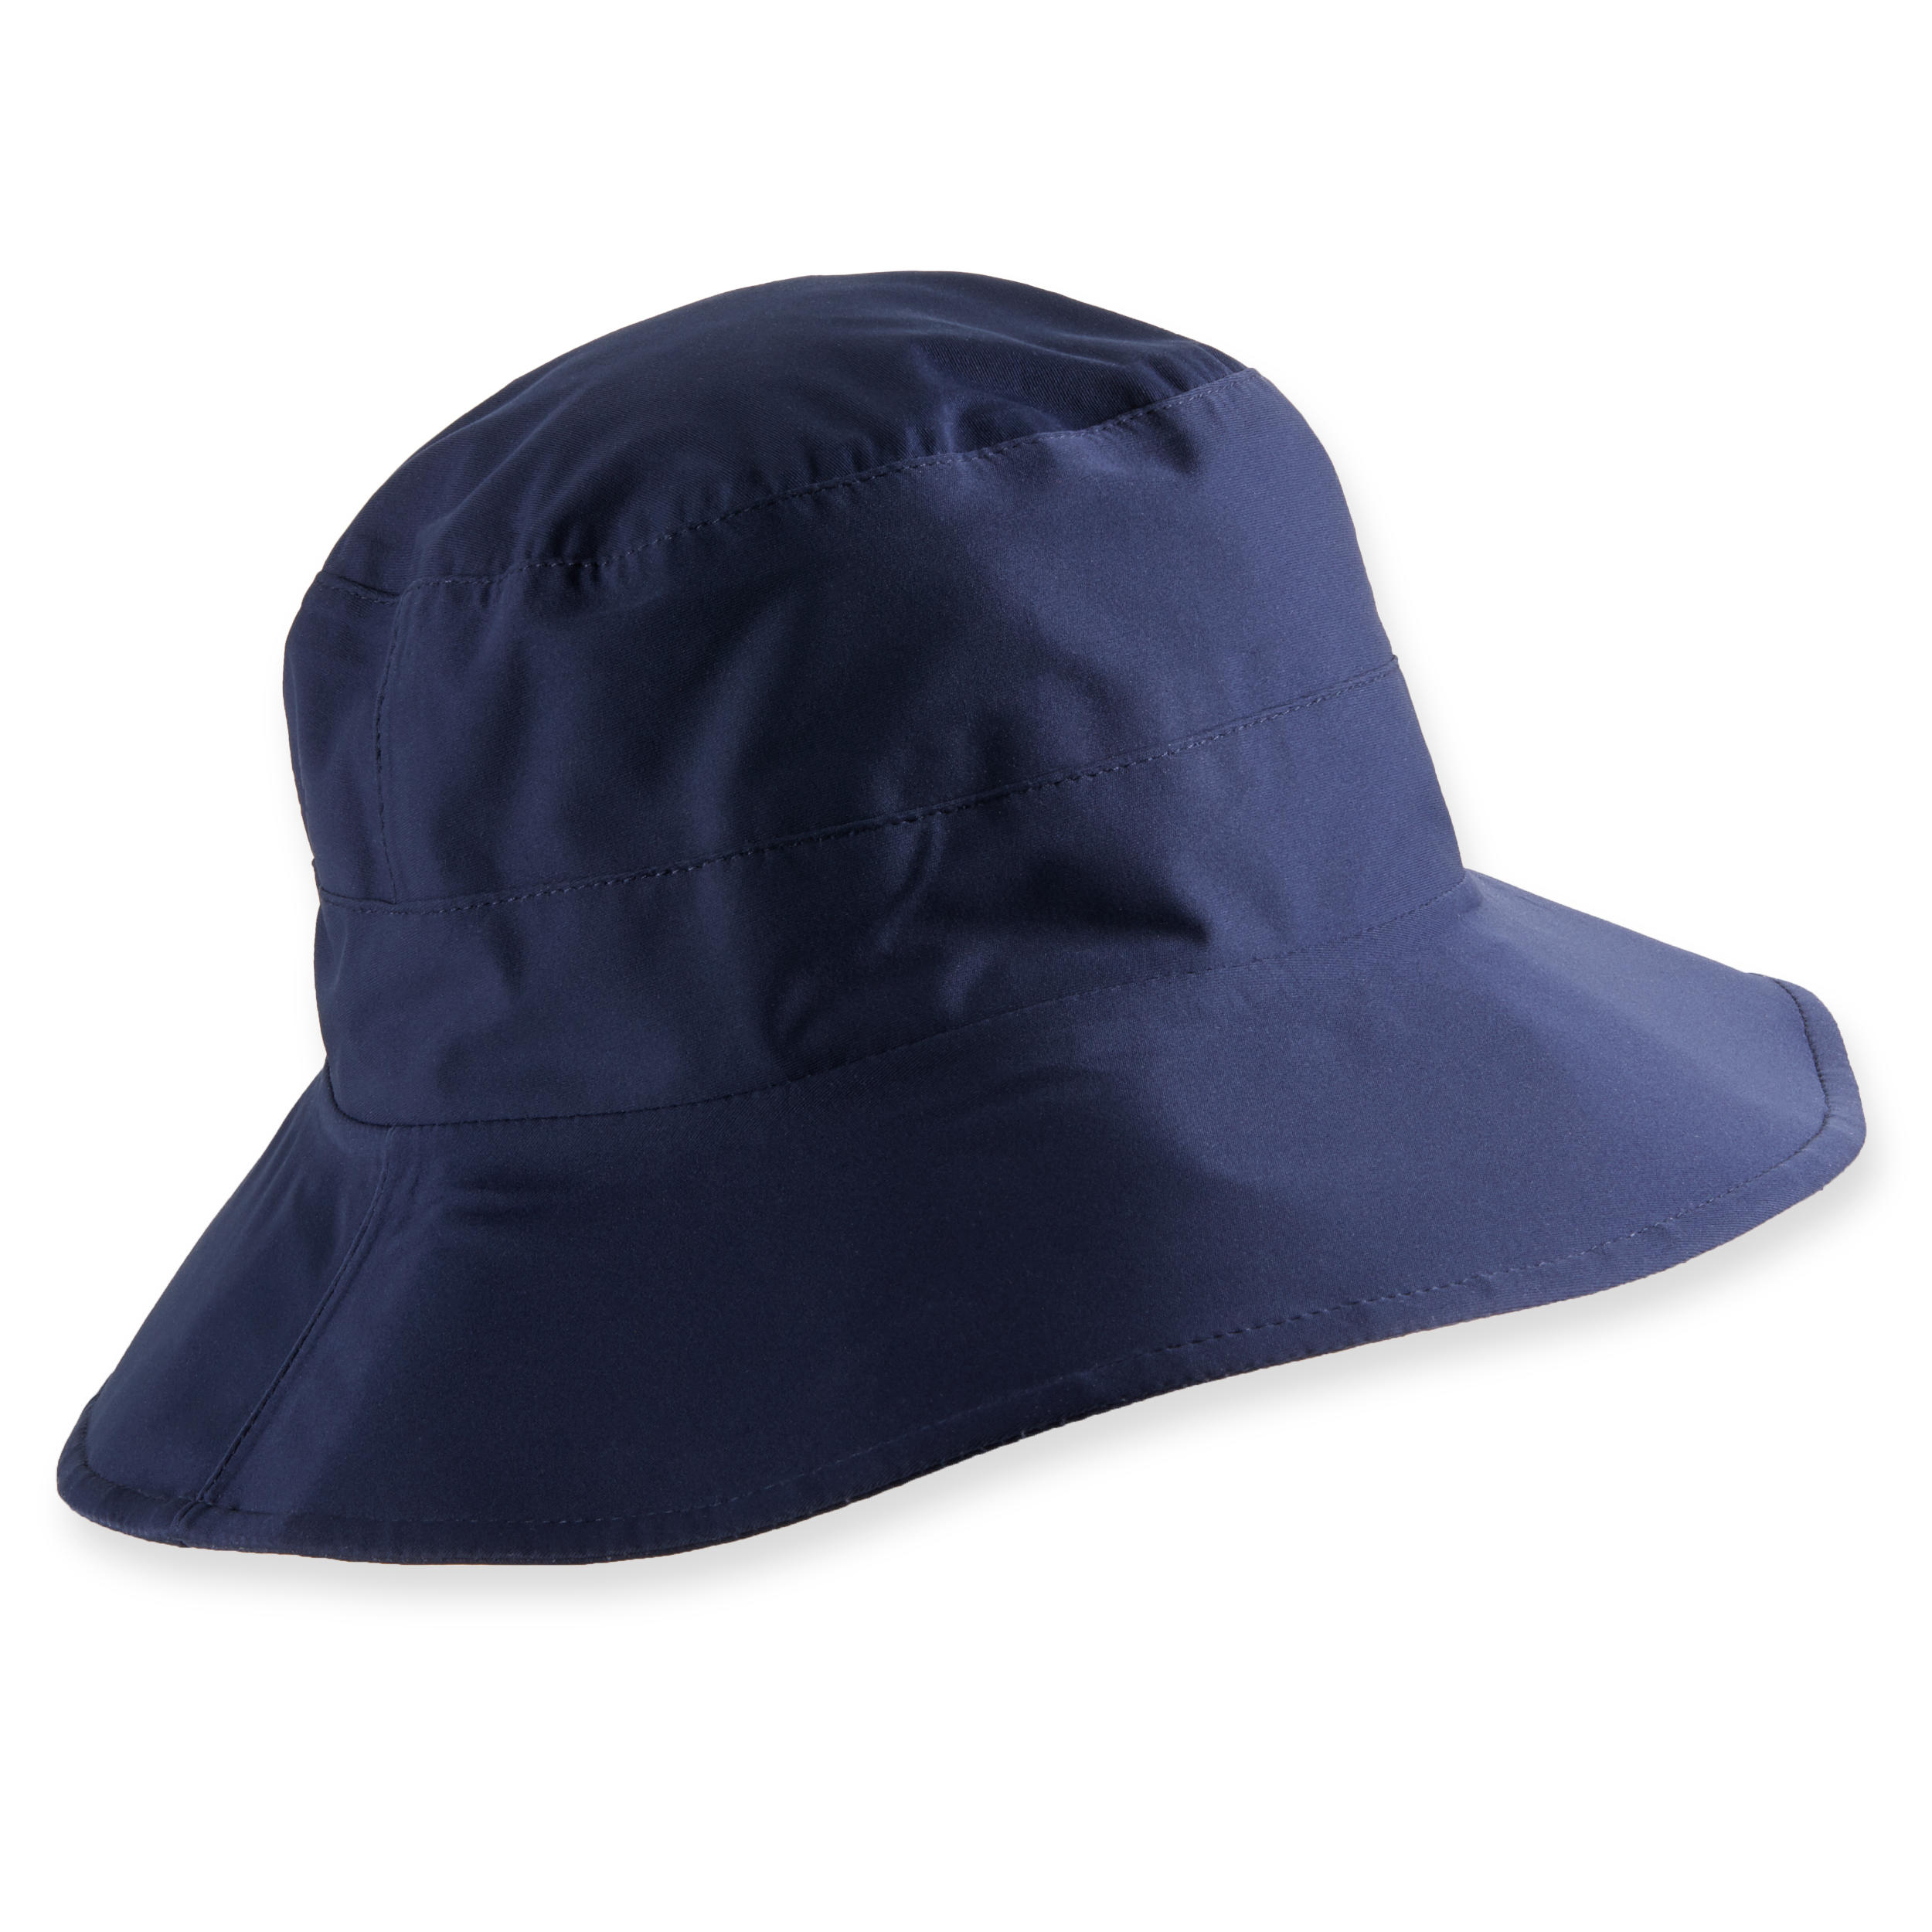 Pălărie Bob Golf RW500 Mărimea 1: 58-62 cm Bleumarin Bărbați56-58cm 58-62